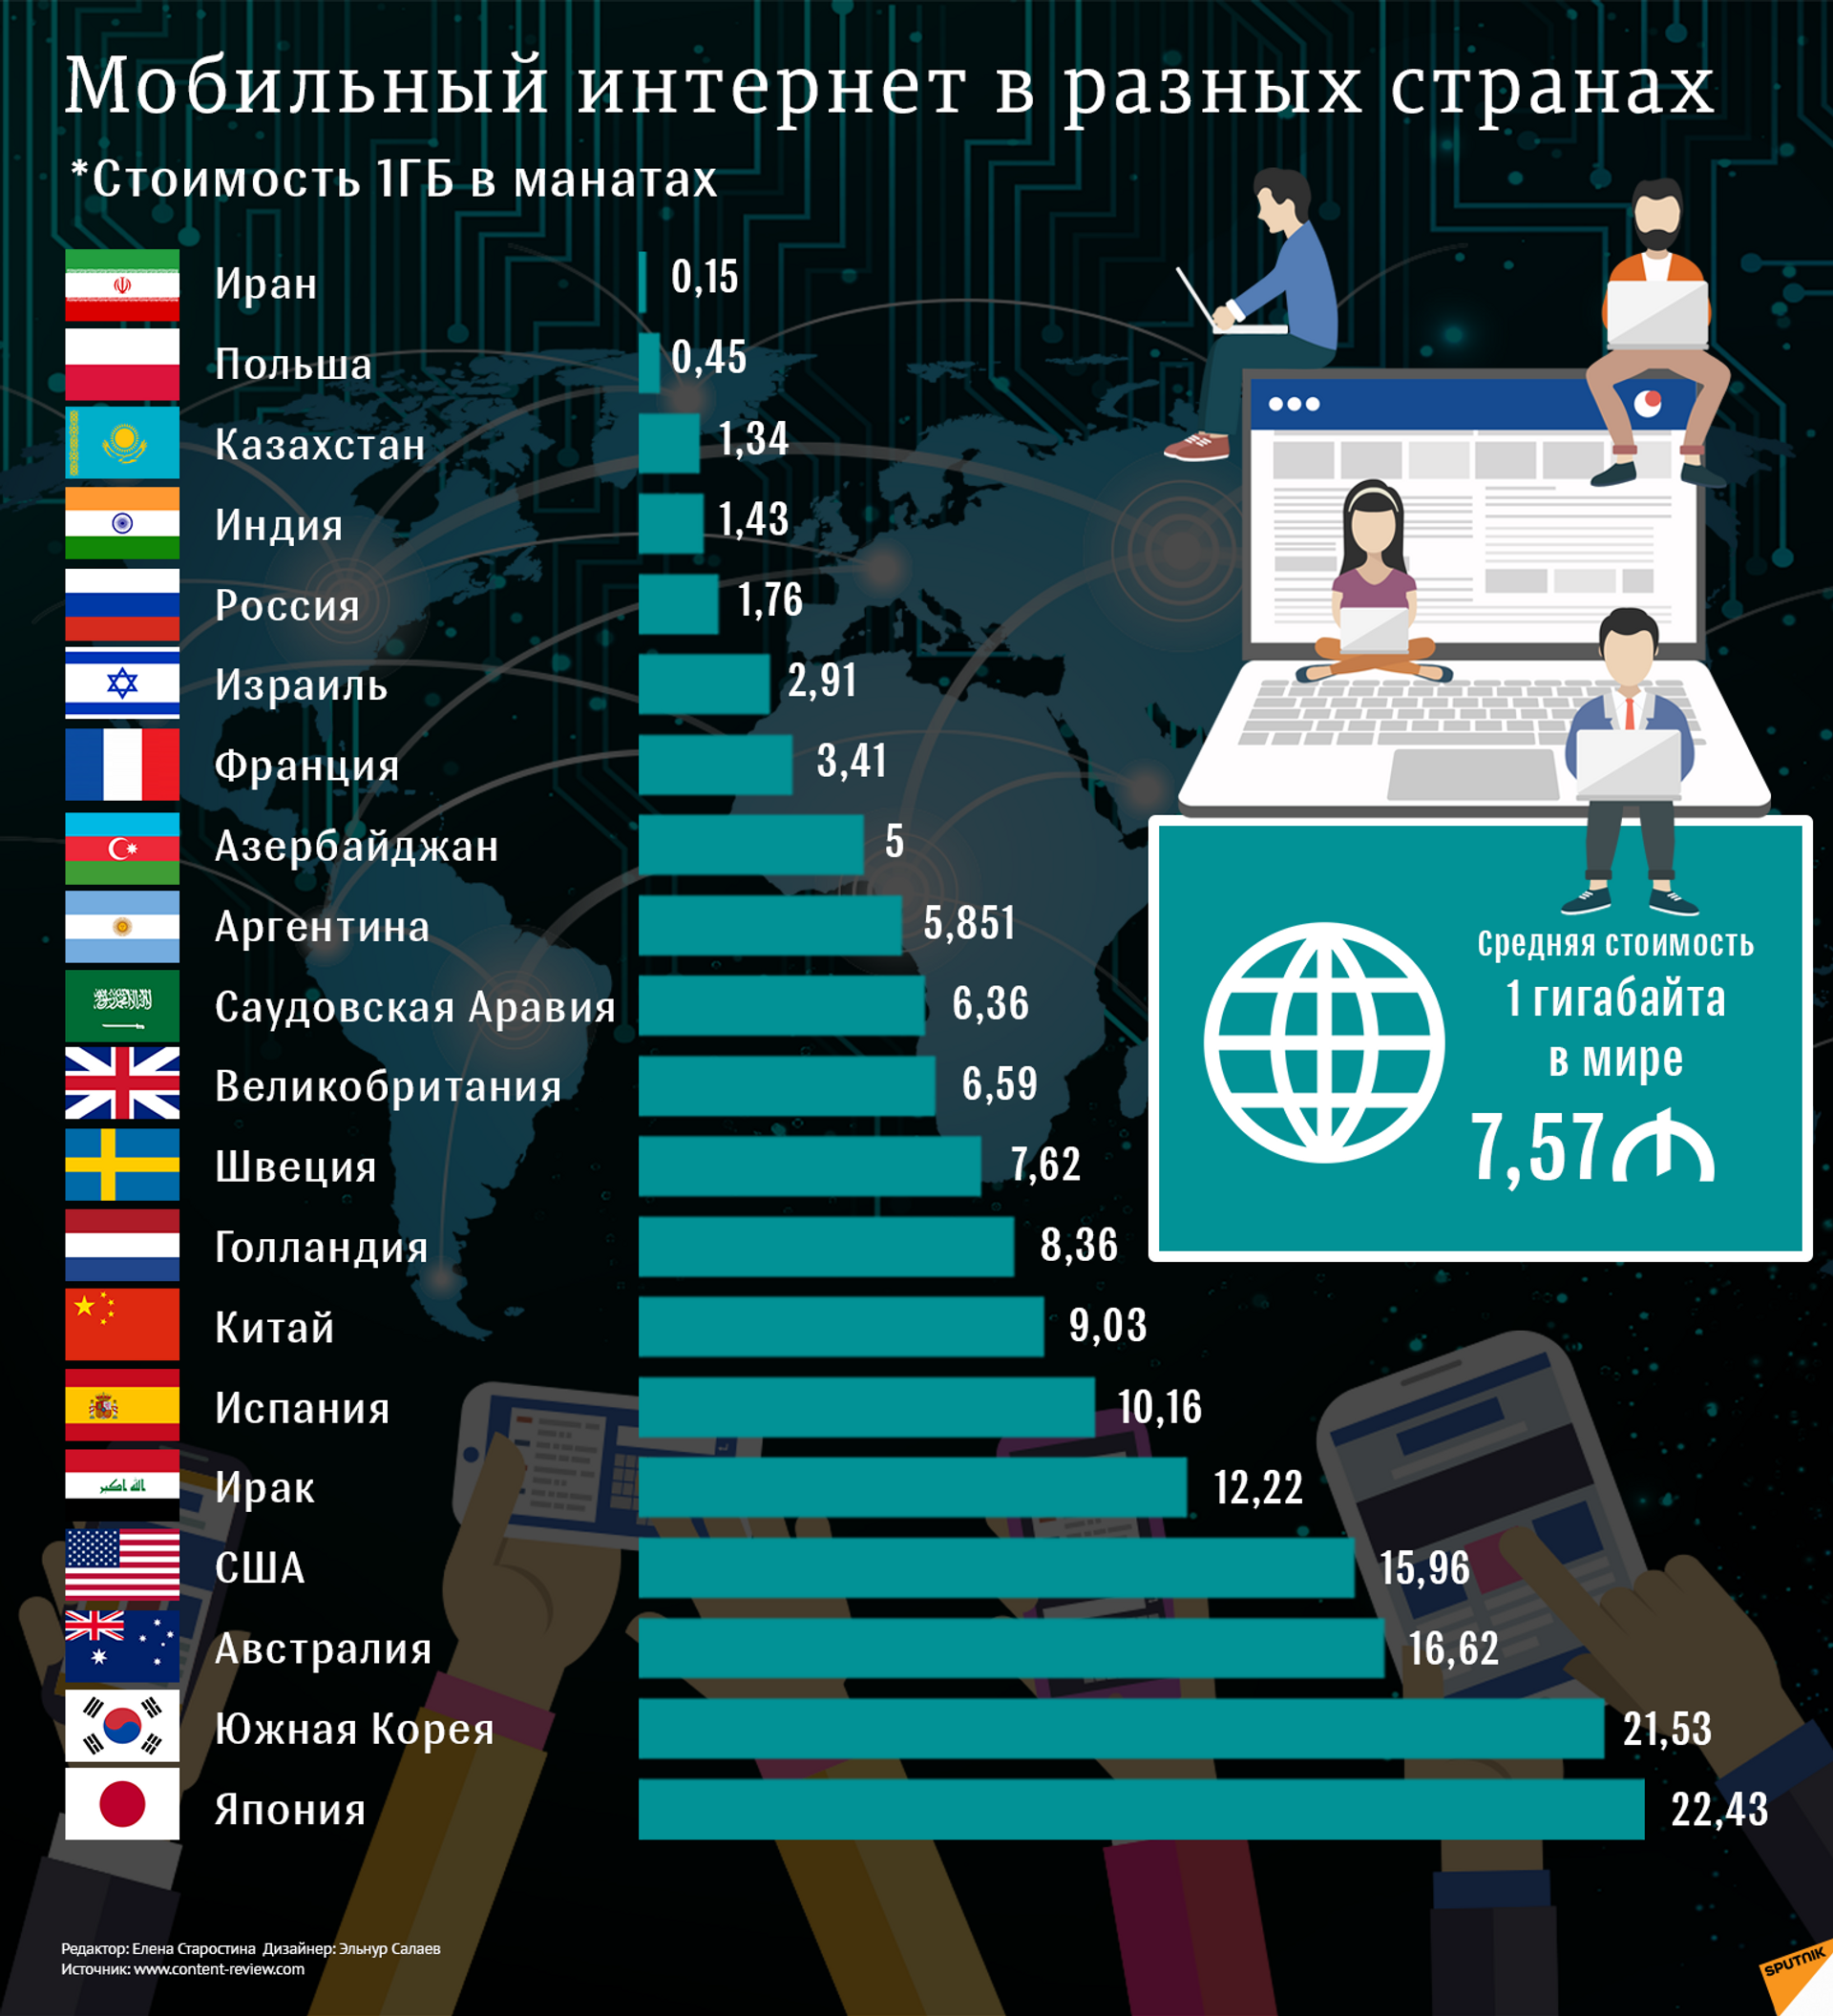 Во время использования интернета. Самый лучший интернет в мире. Использование интернета в разных странах. Рейтинг разных стран. Стоимость интернета по странам.